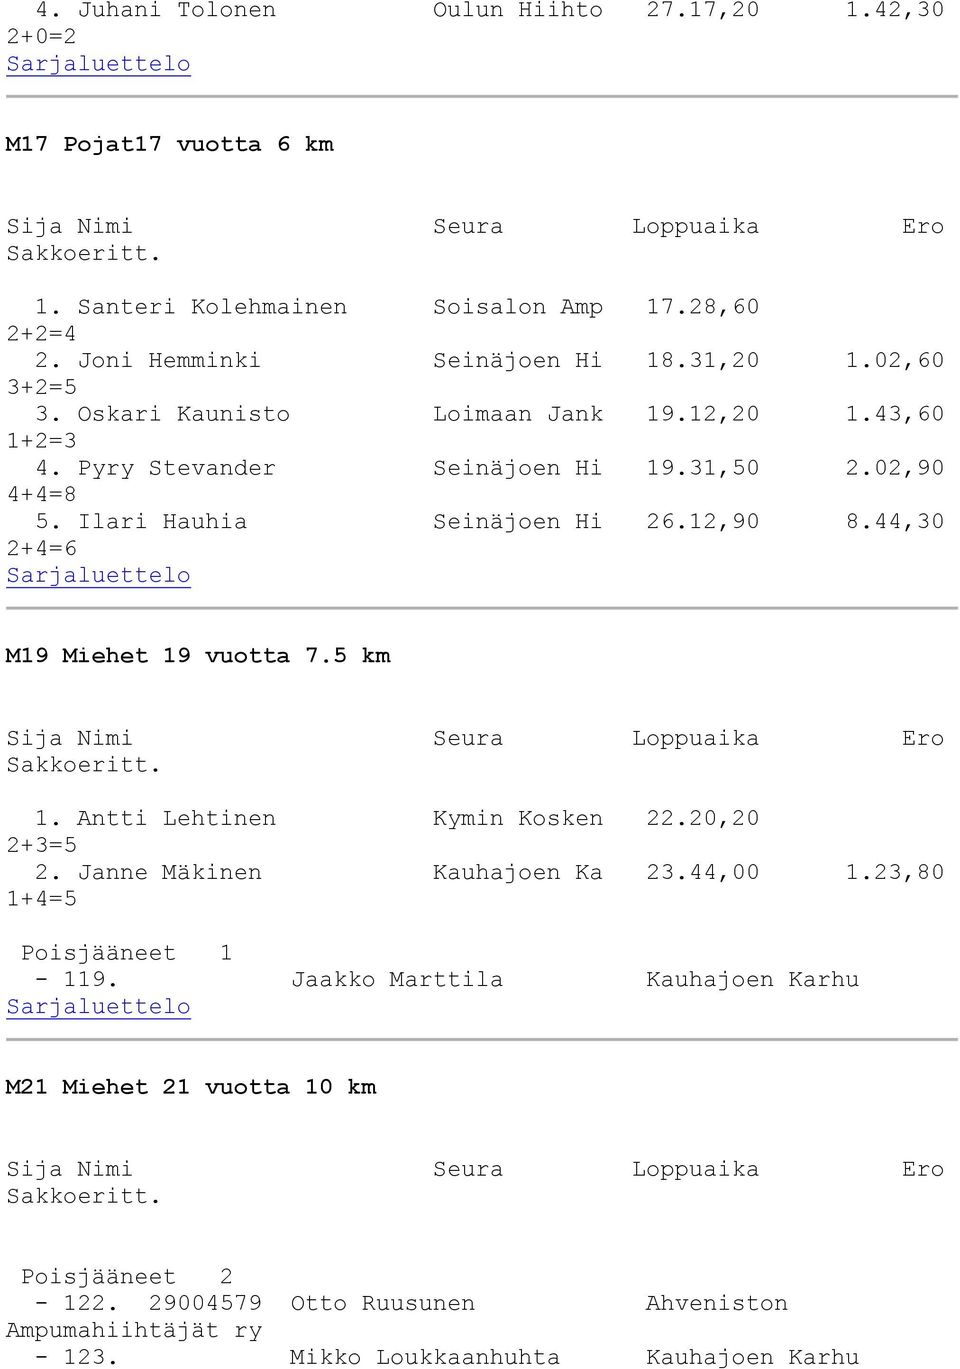 44,30 2+4=6 M19 Miehet 19 vuotta 7.5 km 1. Antti Lehtinen Kymin Kosken 22.20,20 2. Janne Mäkinen Kauhajoen Ka 23.44,00 1.23,80 1+4=5 Poisjääneet 1-119.